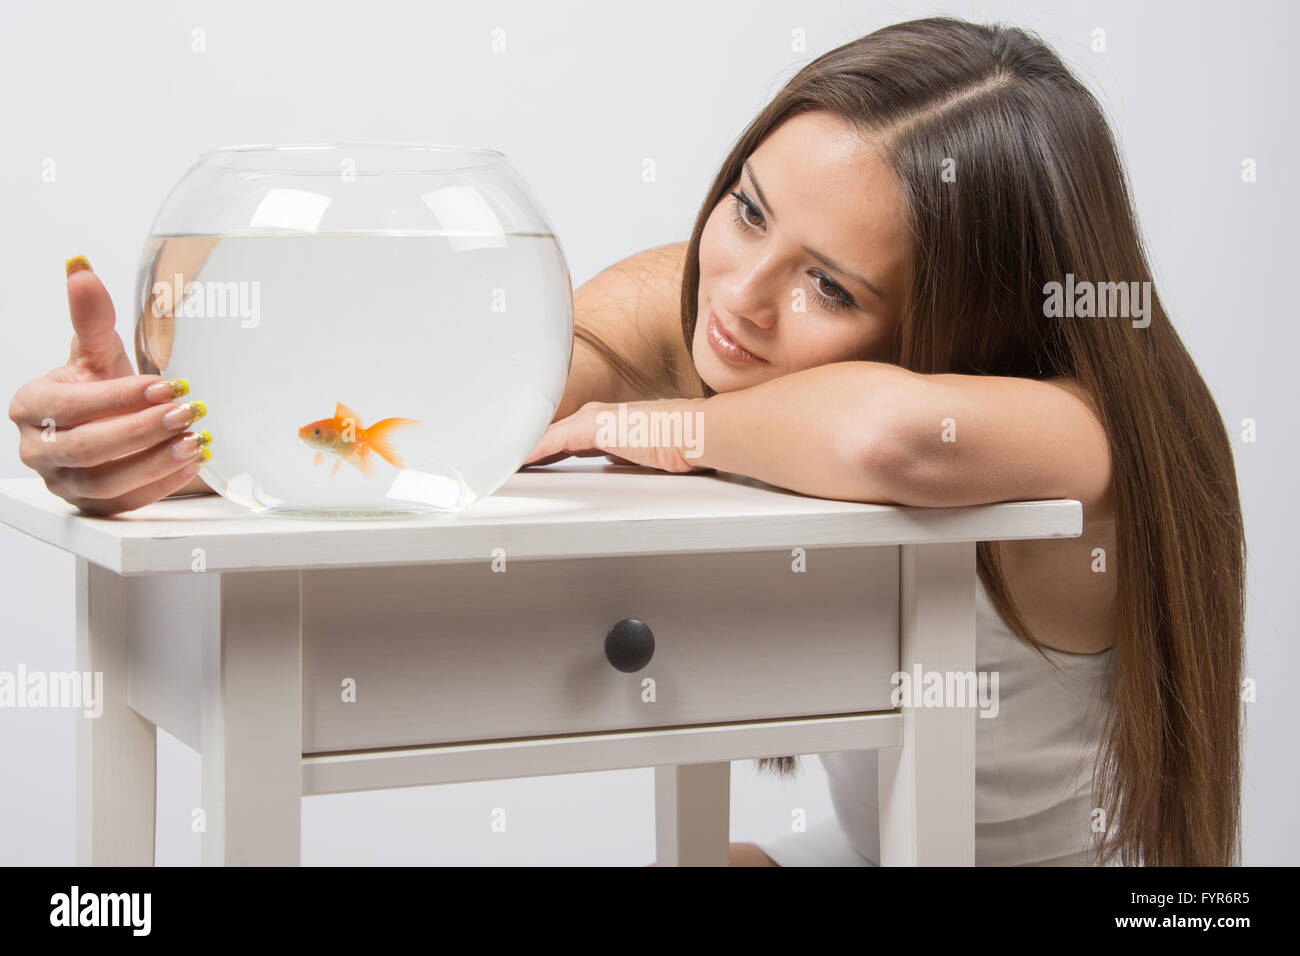 Das Mädchen schaut auf eine kleine Goldfische in einem Goldfischglas Stockfoto